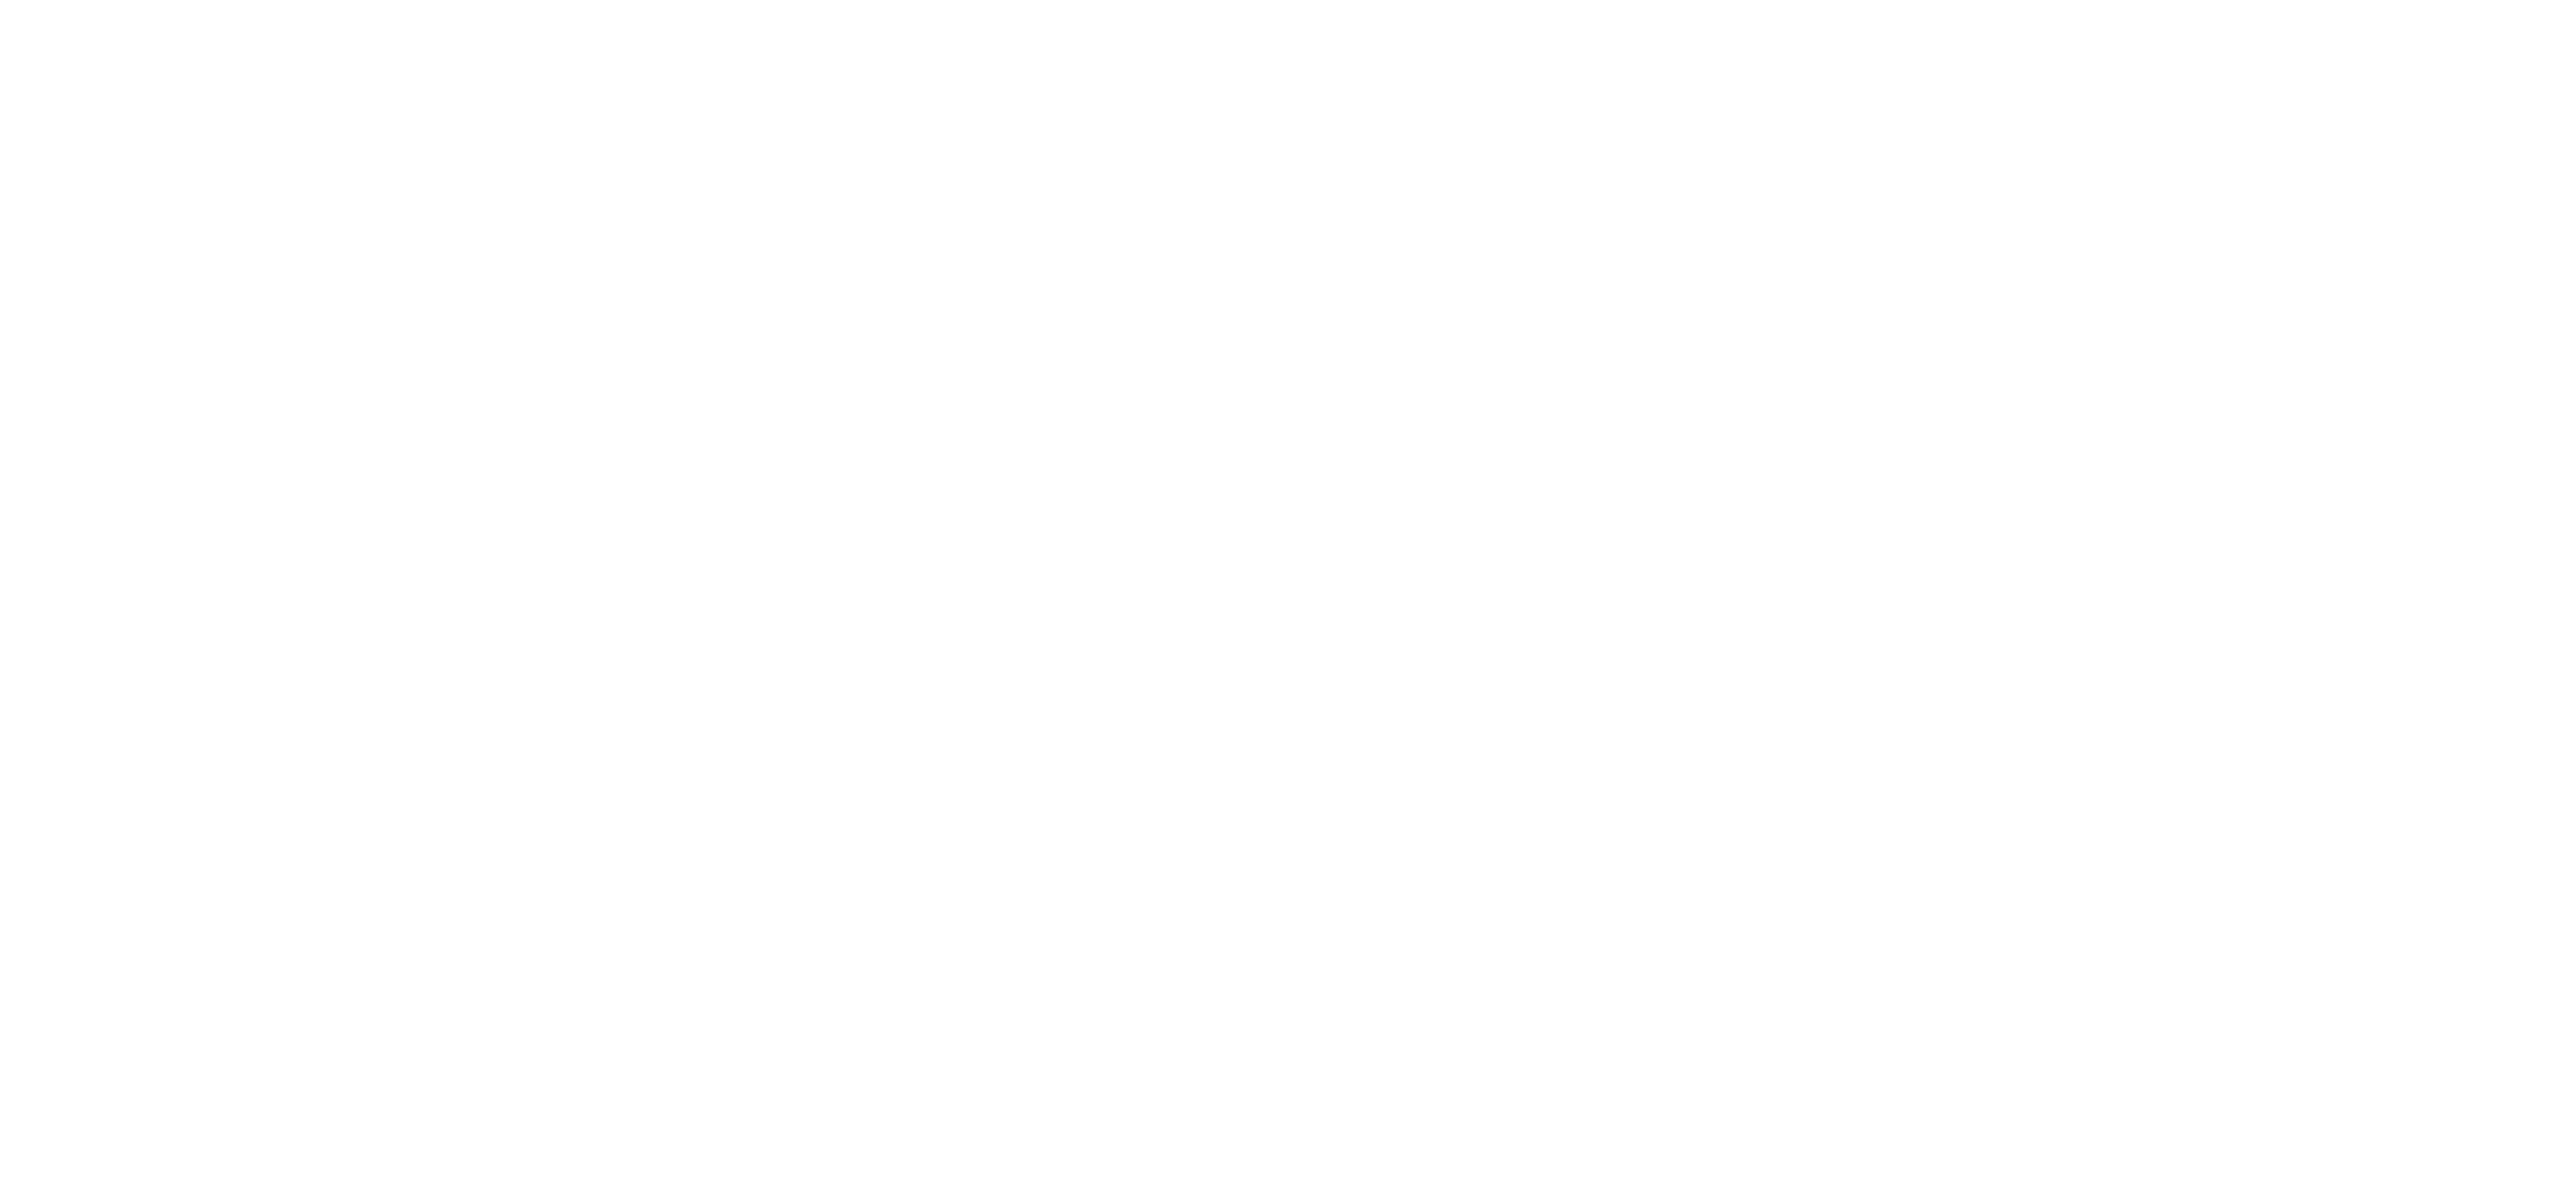 Decor & More